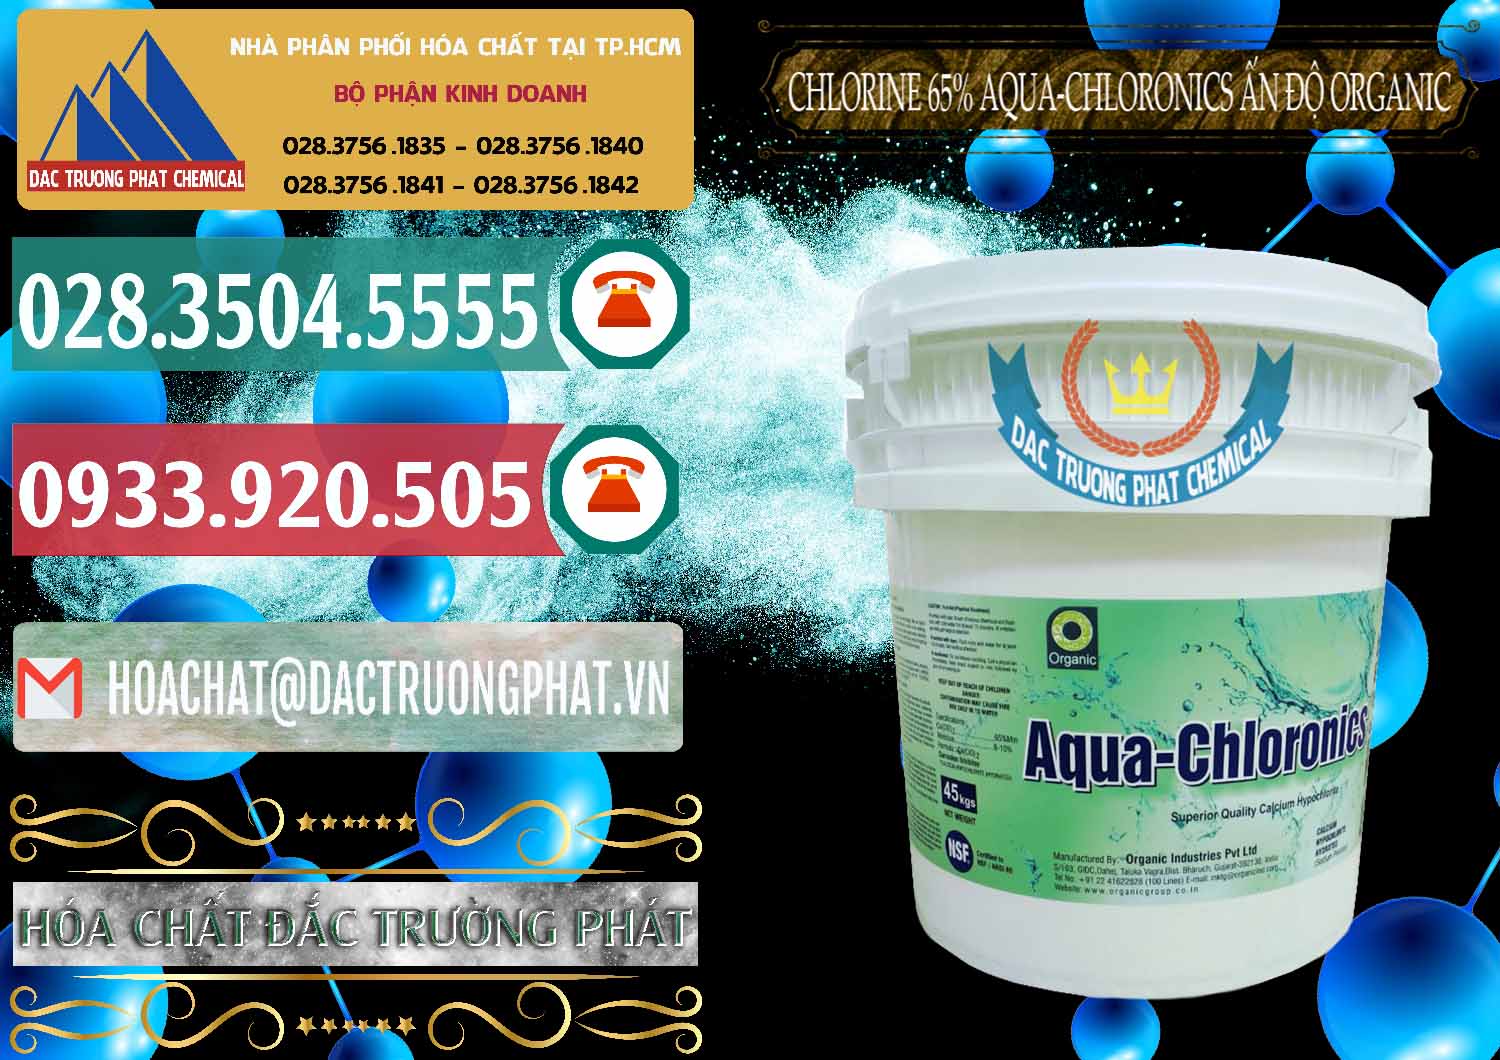 Nơi chuyên kinh doanh & bán Chlorine – Clorin 65% Aqua-Chloronics Ấn Độ Organic India - 0210 - Đơn vị chuyên phân phối - nhập khẩu hóa chất tại TP.HCM - muabanhoachat.vn